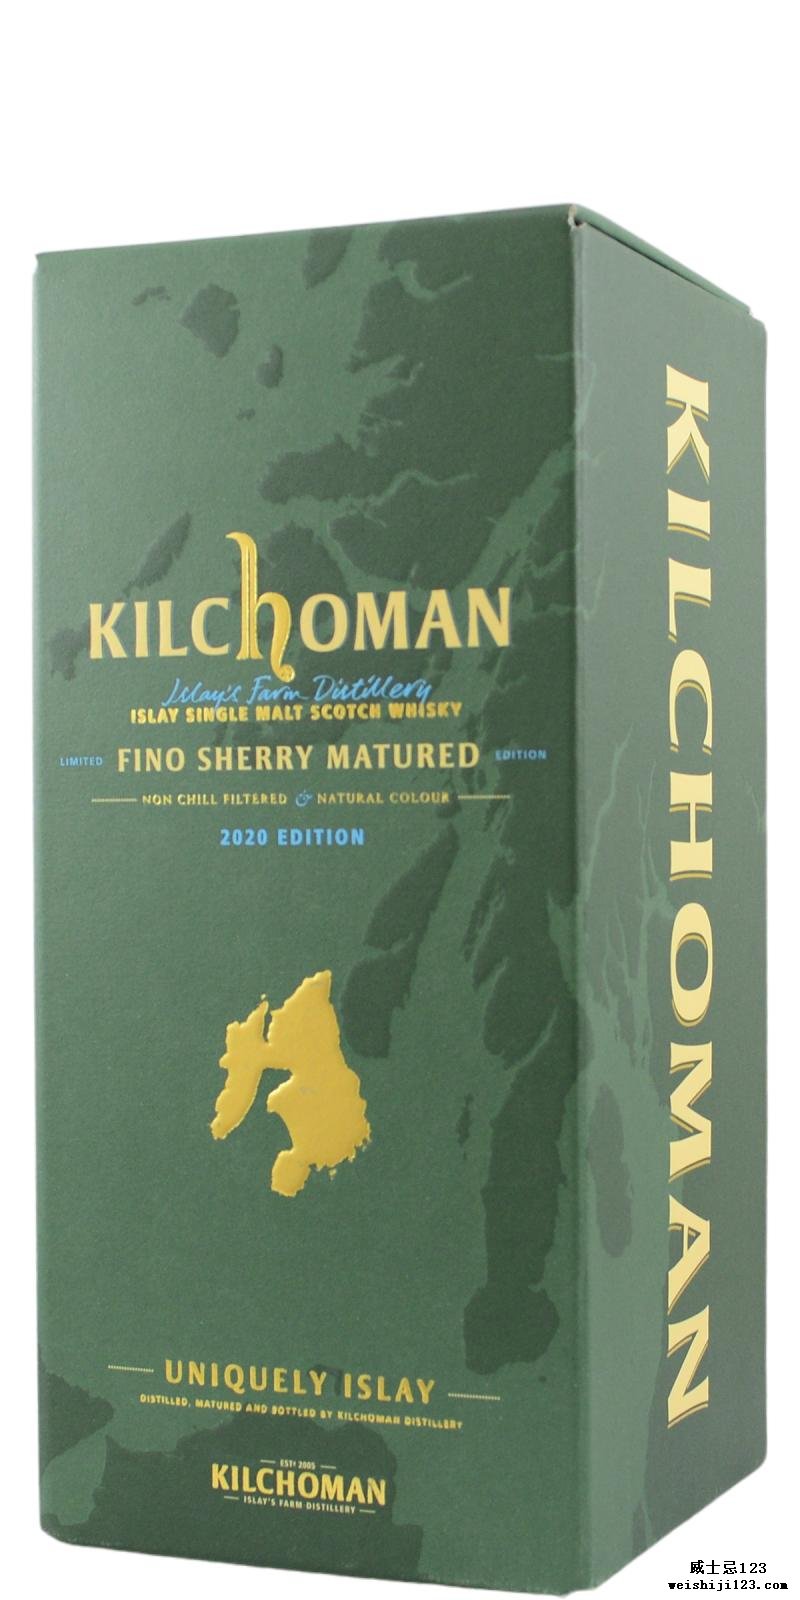 Kilchoman Fino Sherry Matured